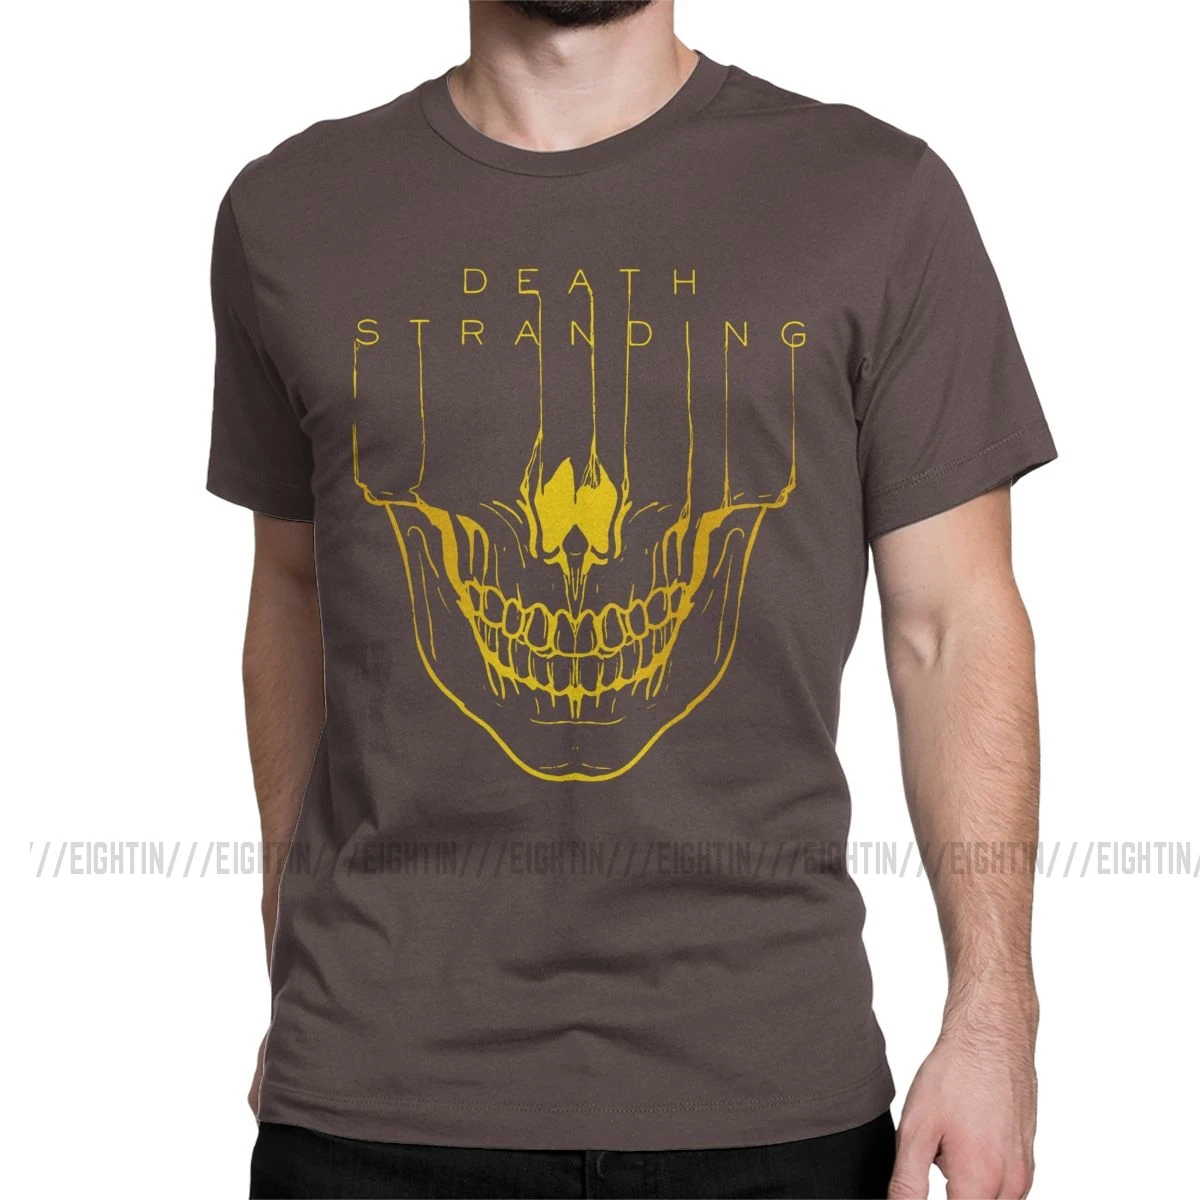 Мужская футболка с надписью "Death Stranding", Кодзима Хидео, металлическая шестерня, одноцветная футболка с коротким рукавом из хлопка с изображением игры "Reedus Norman Game Mgs", 4XL, 5XL, футболка - Цвет: Коричневый